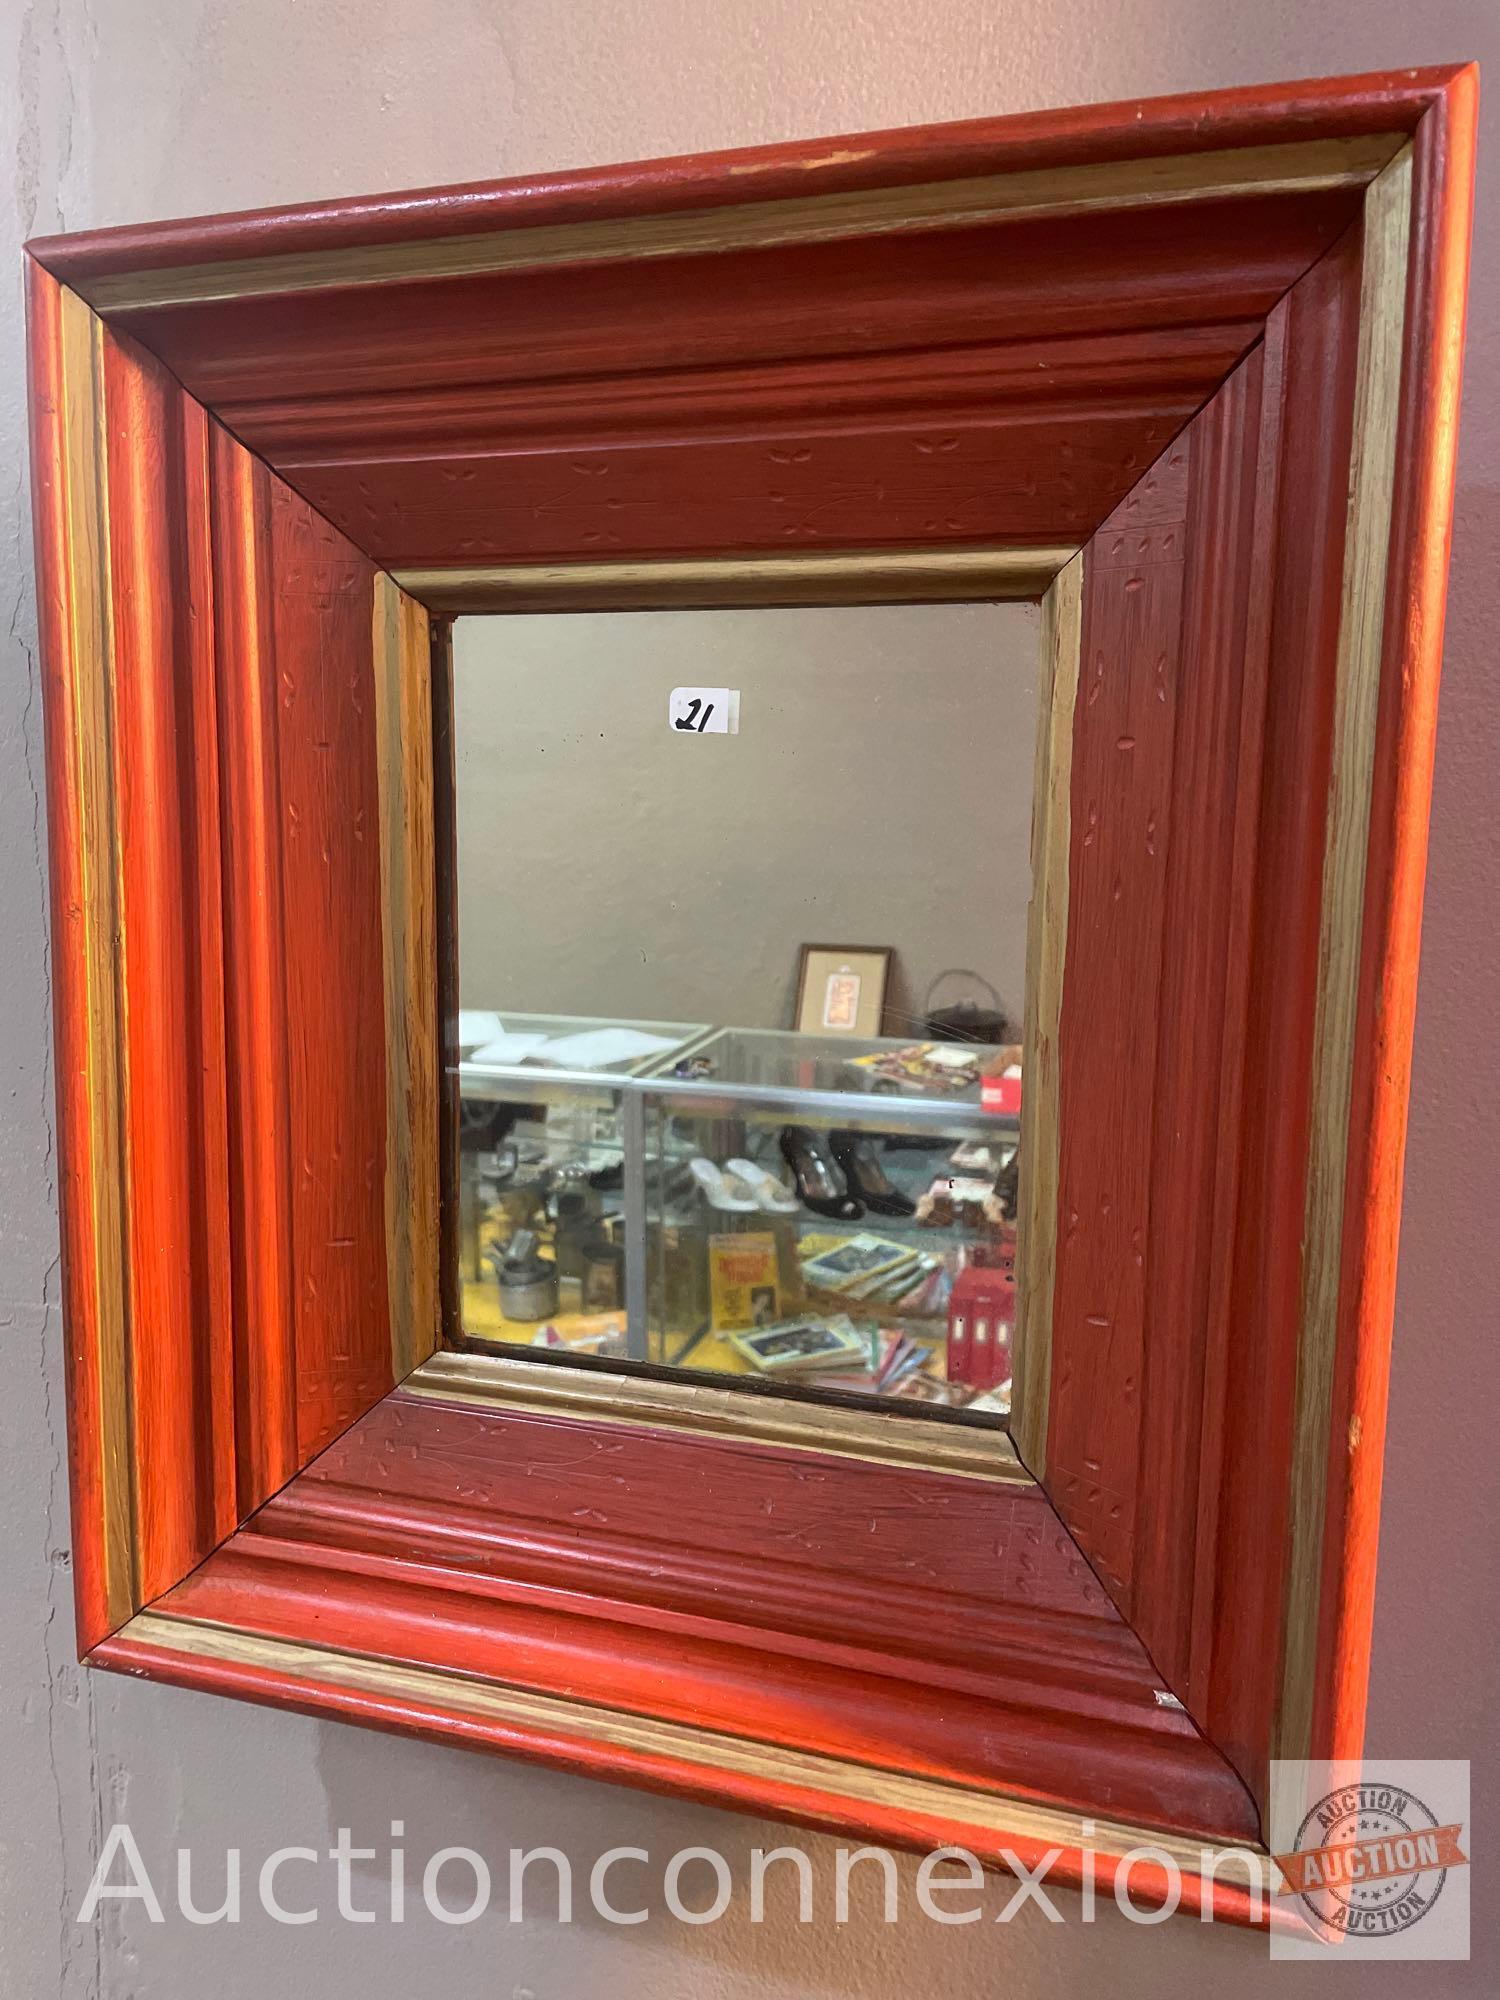 Wood framed wall mirror